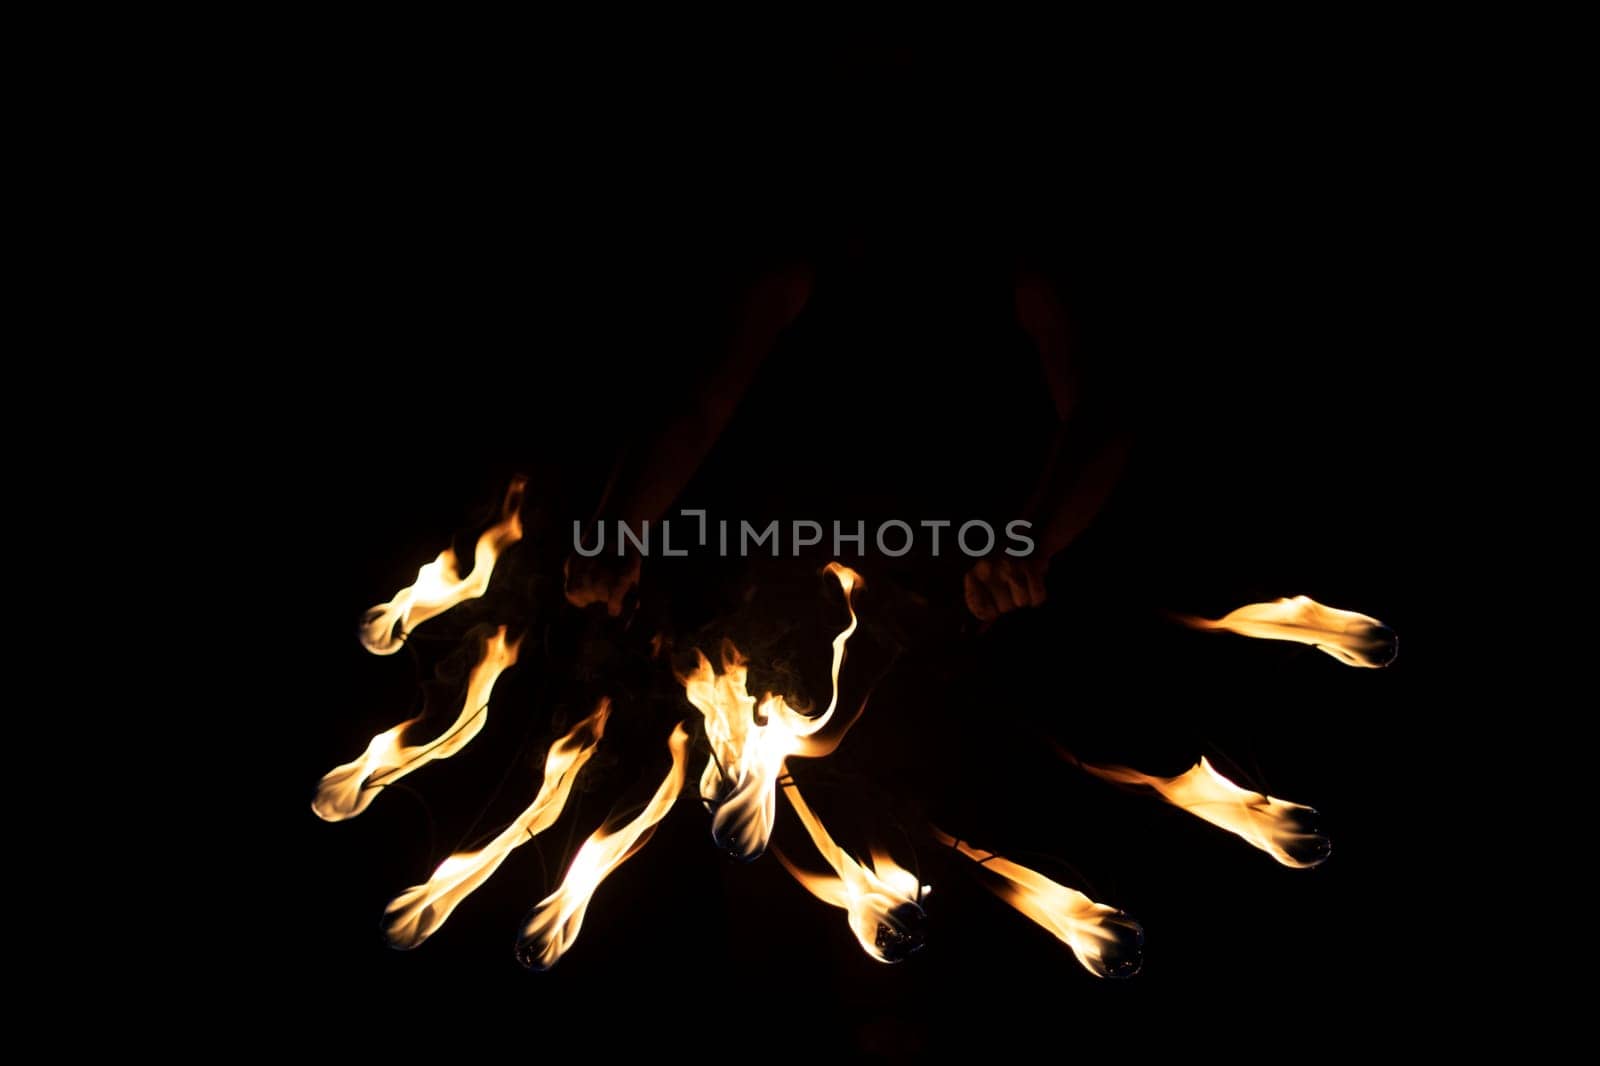 Lights in dark. Burning flames at night. Texture of burning fuel. by OlegKopyov